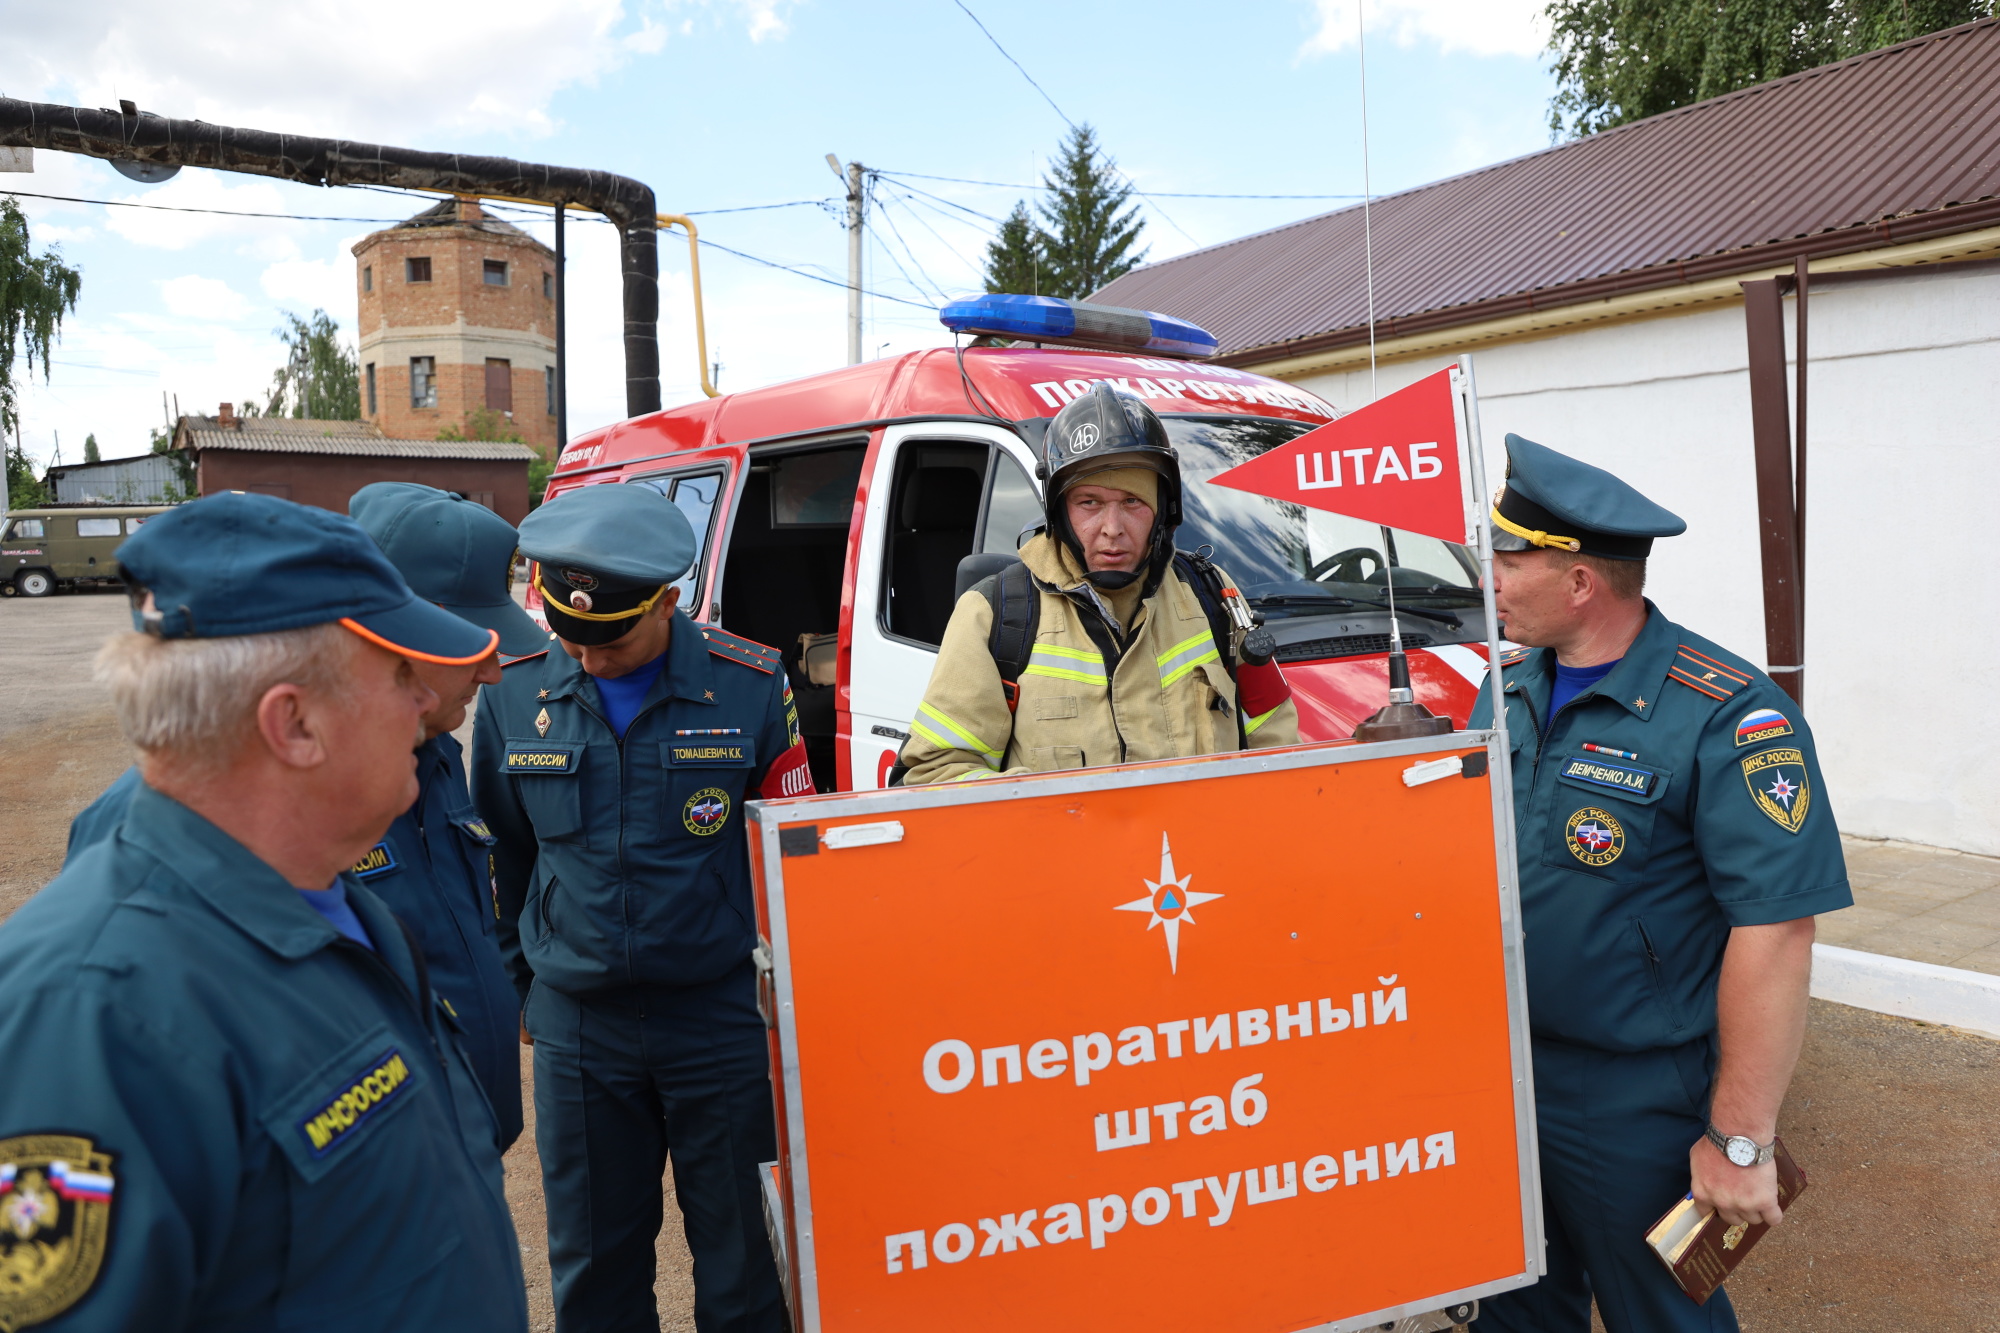 Огнеборцы МЧС России тренировались ликвидировать возгорания на объектах с массовым пребыванием людей